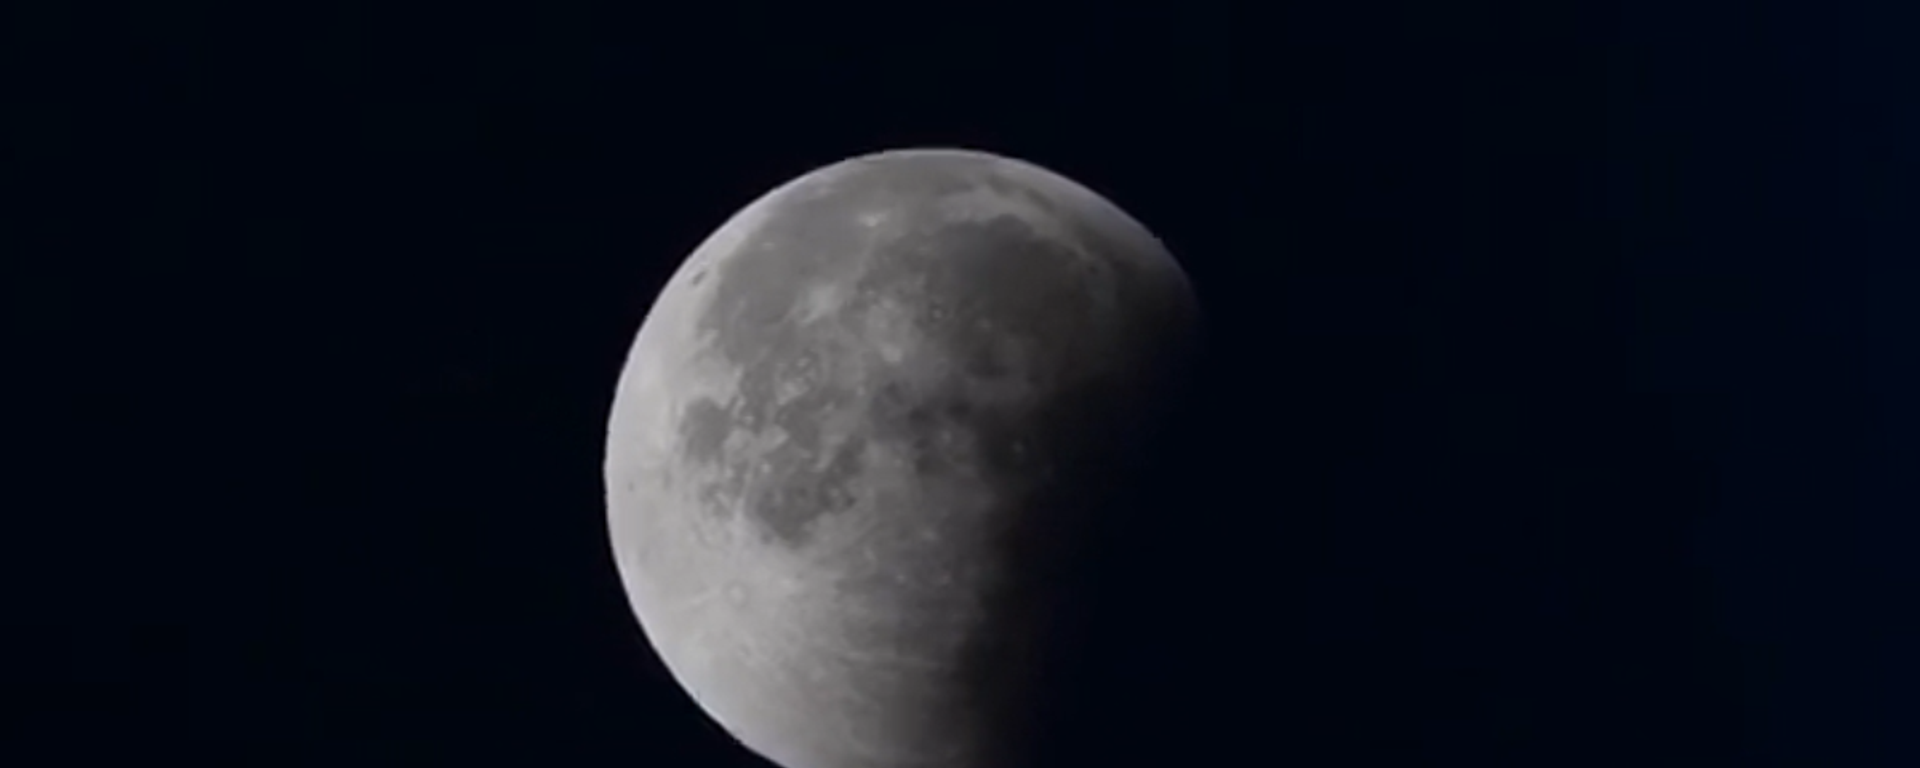 El histórico eclipse lunar visto por los ojos de un cosmonauta - Sputnik Mundo, 1920, 22.11.2021